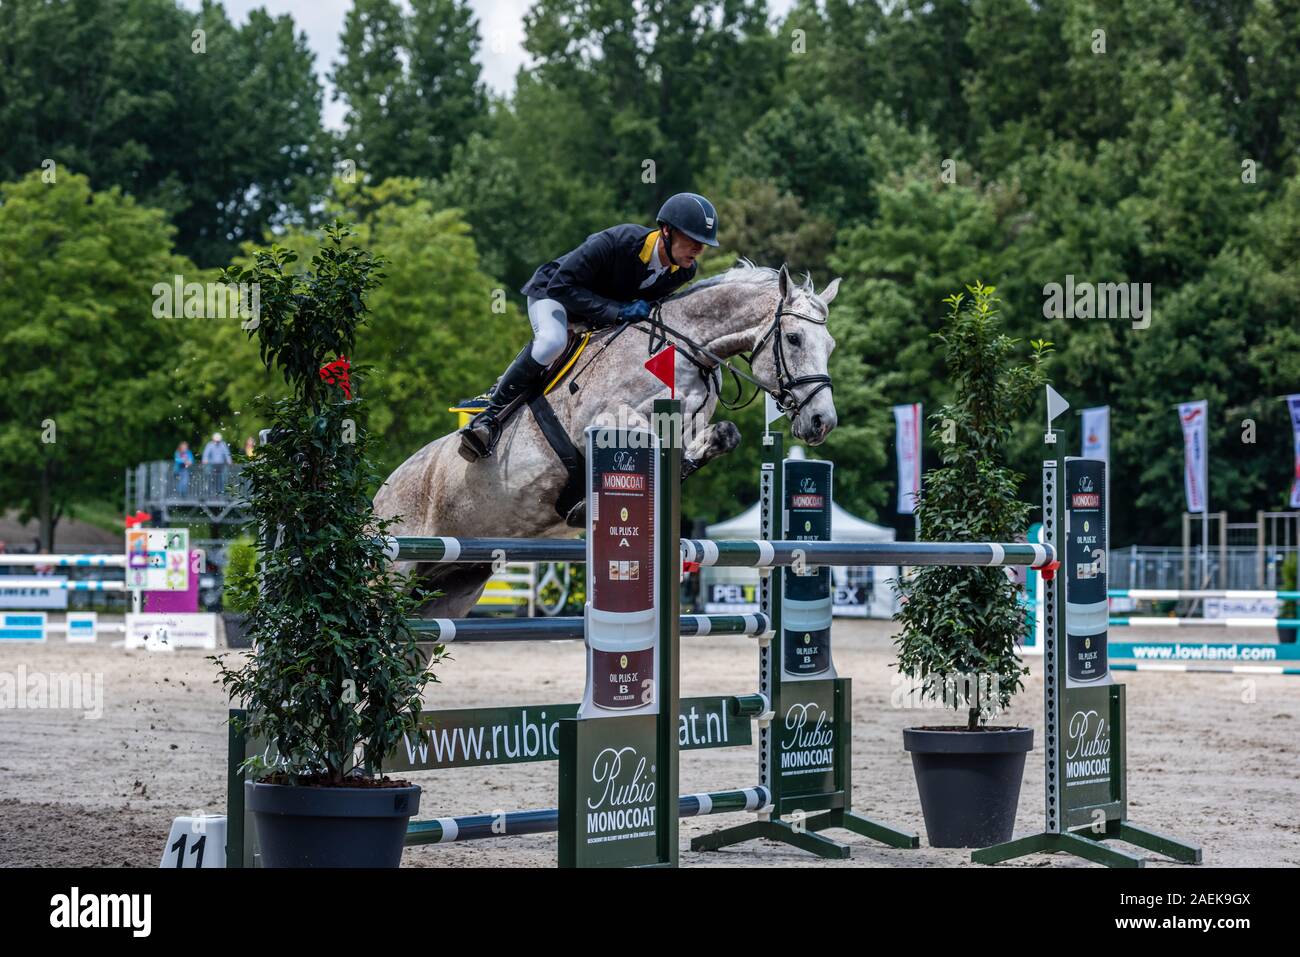 Haarlemmermeer Holland 19 Juni 2019 Concours Hippique Pferd springen Stockfoto